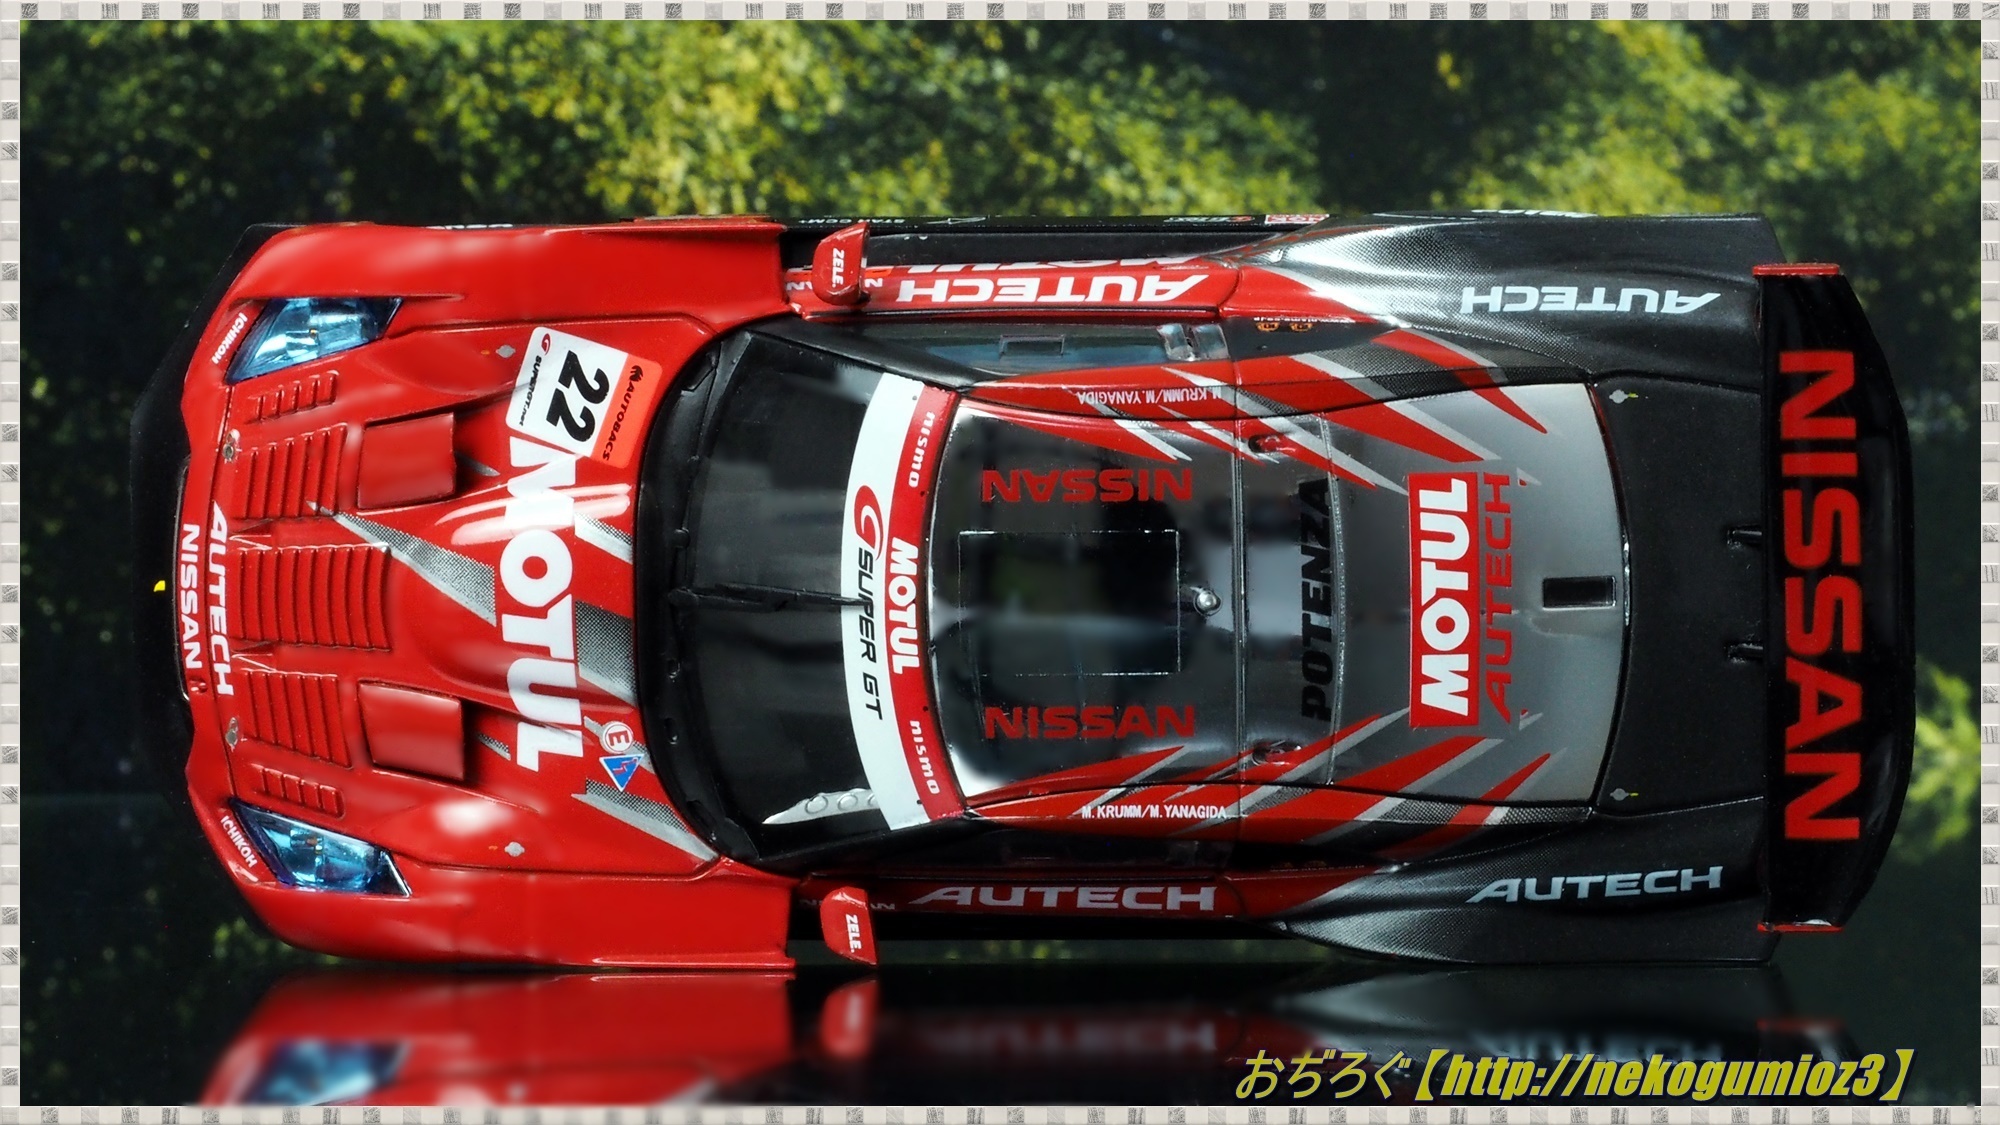 MOTUL AUTECH GT-R LOW-DOWN FORCE FUJI SUPER GT 2008 GT500 #22 